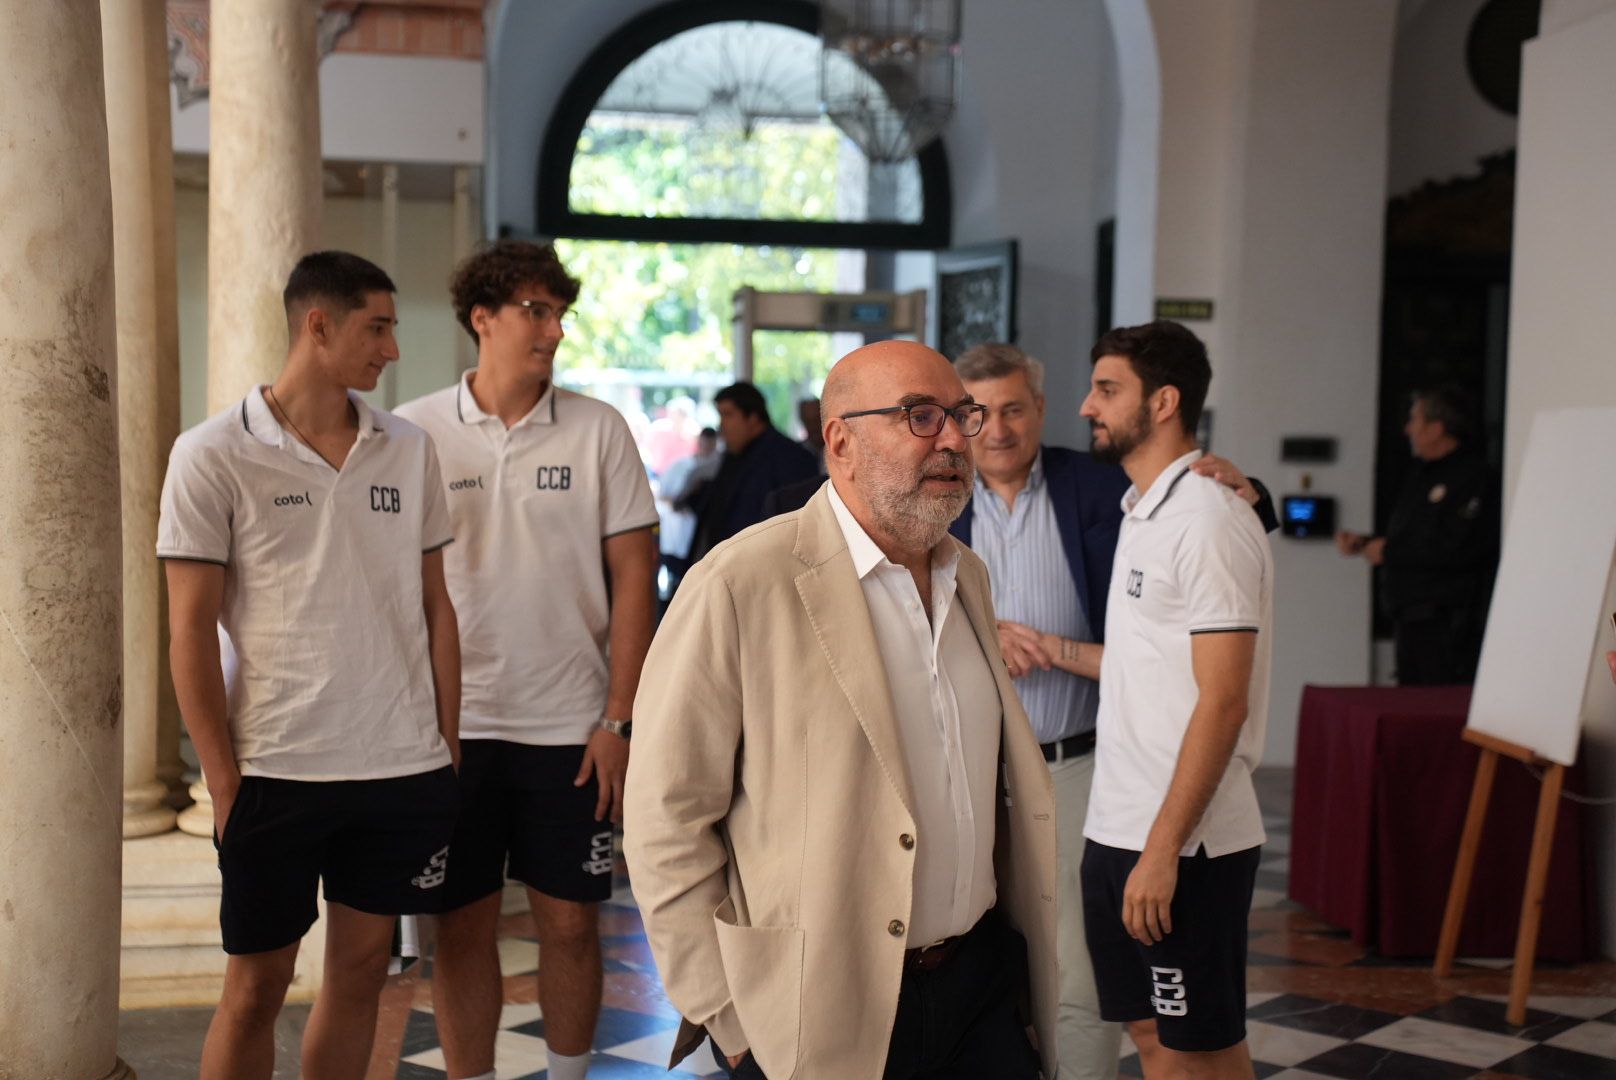 La visita del Coto Córdoba Baloncesto a la Diputación Provincial, en imágenes